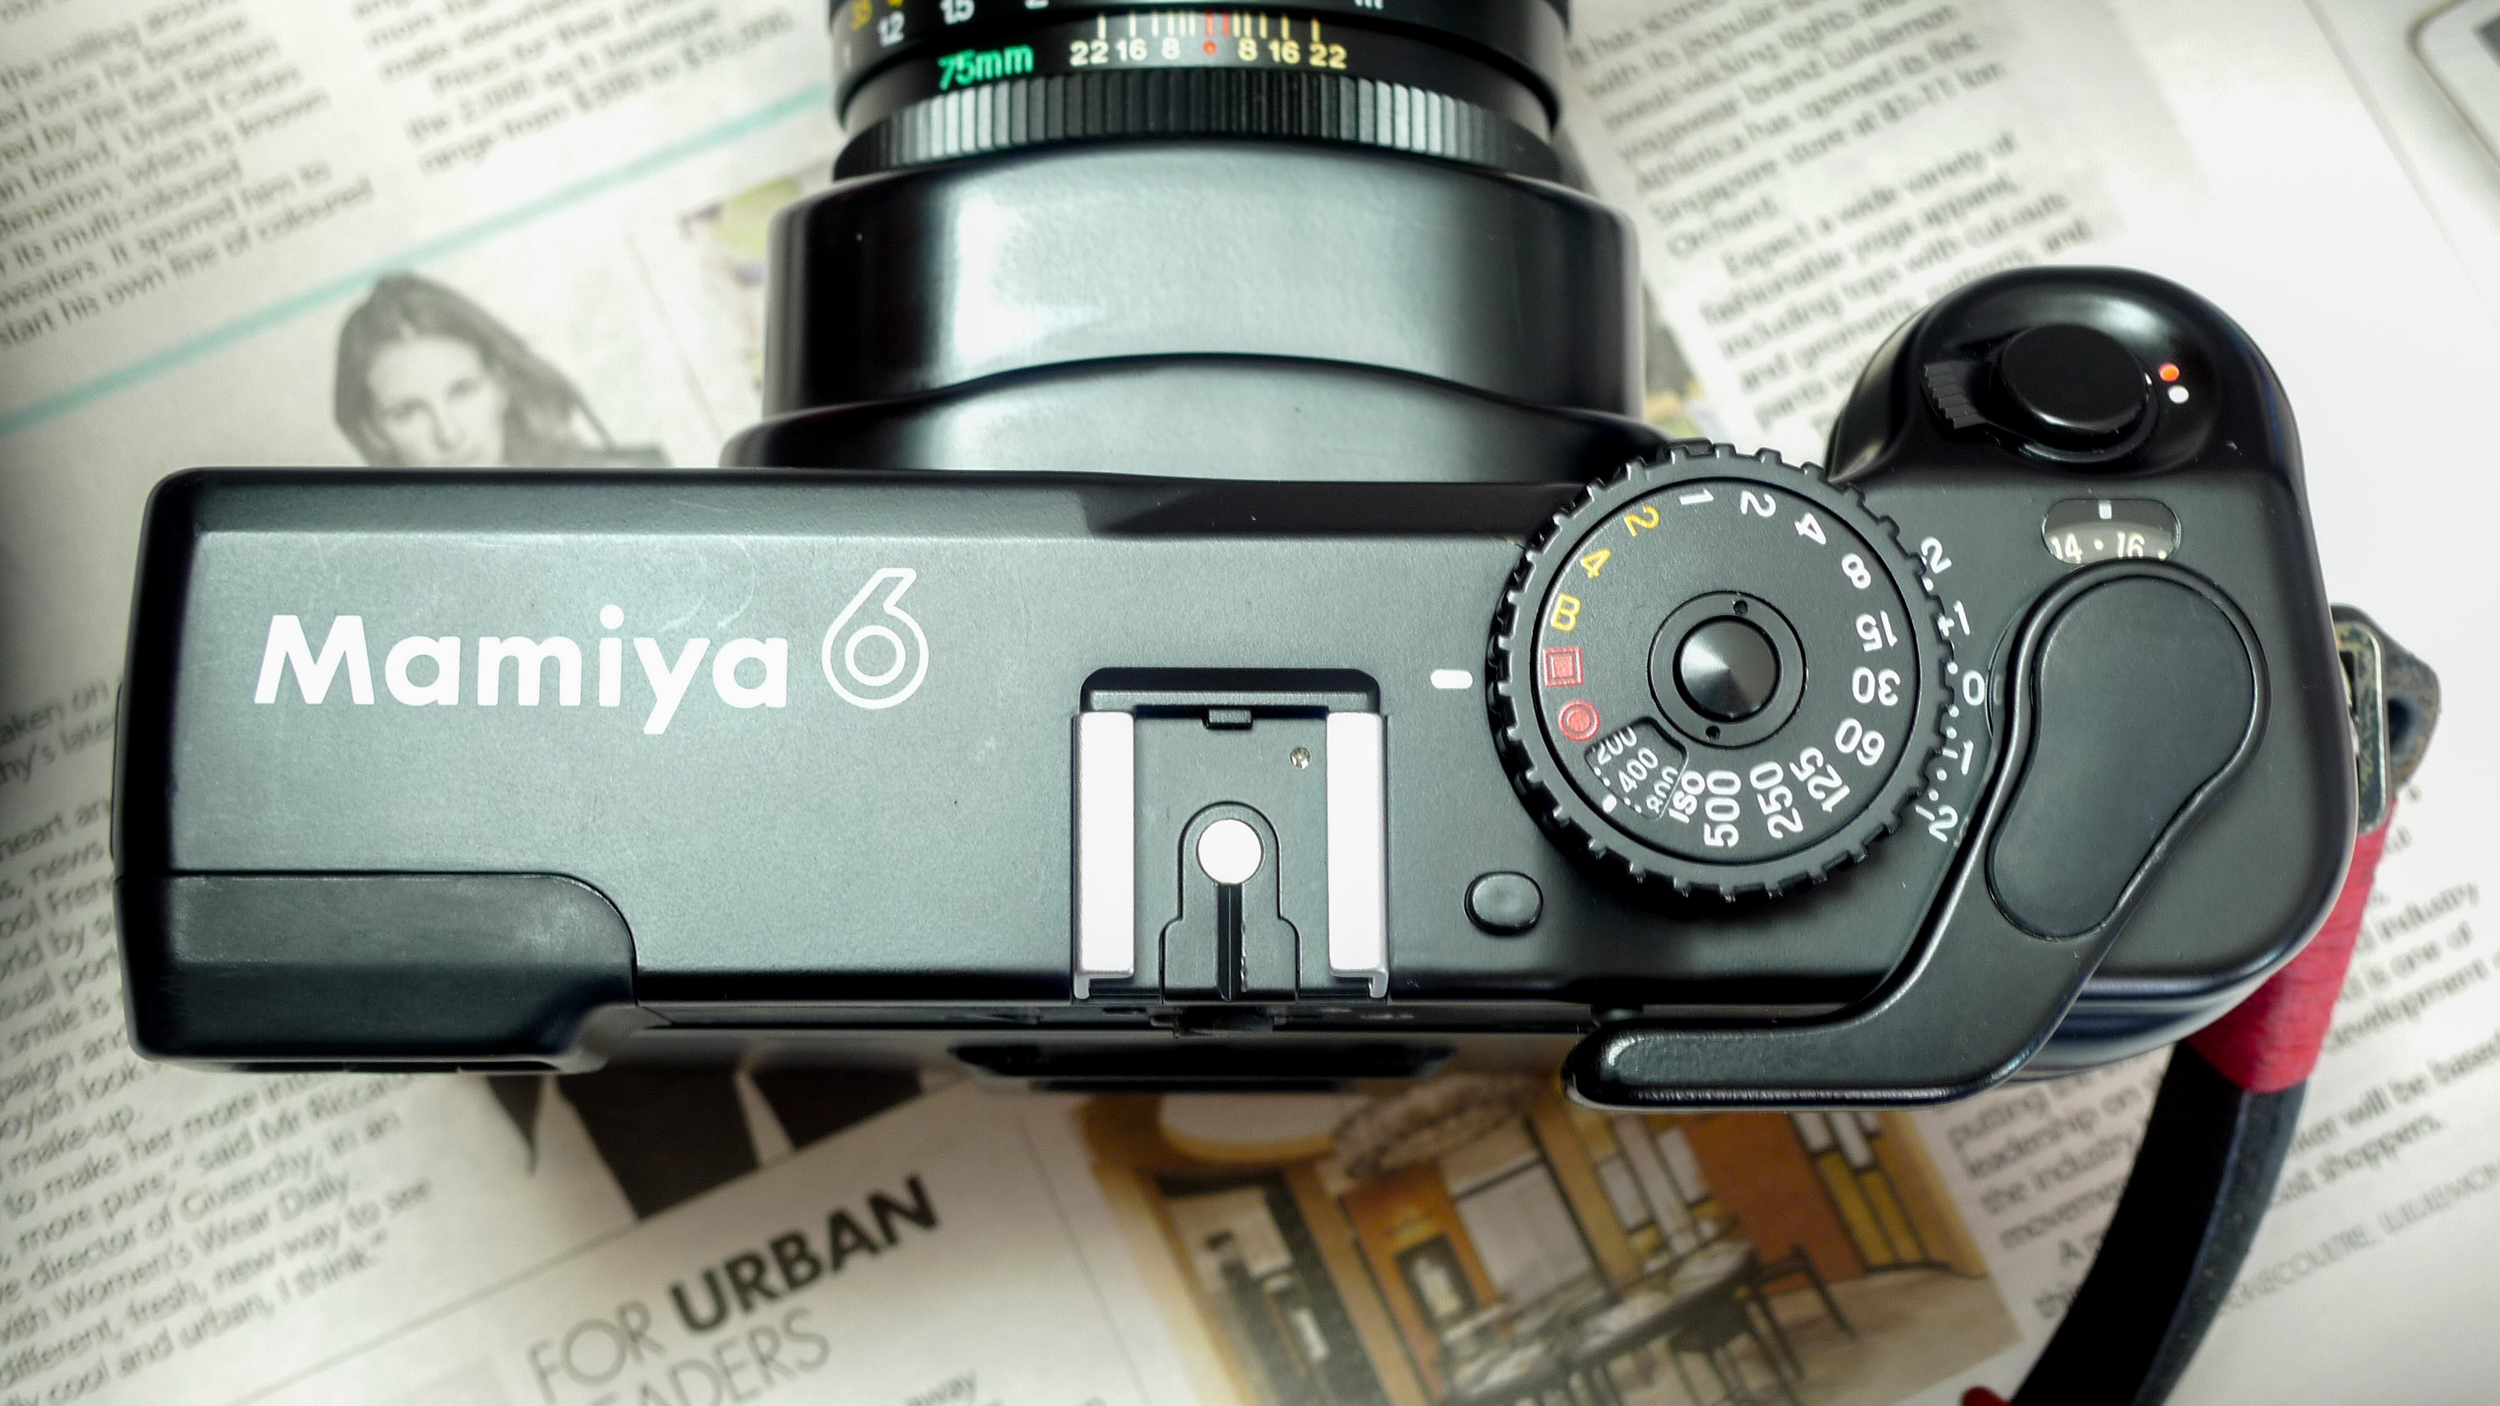 Mamiya Mamiya 6 Mint with Its 3 Lenses 50mm/75mm/150mm 